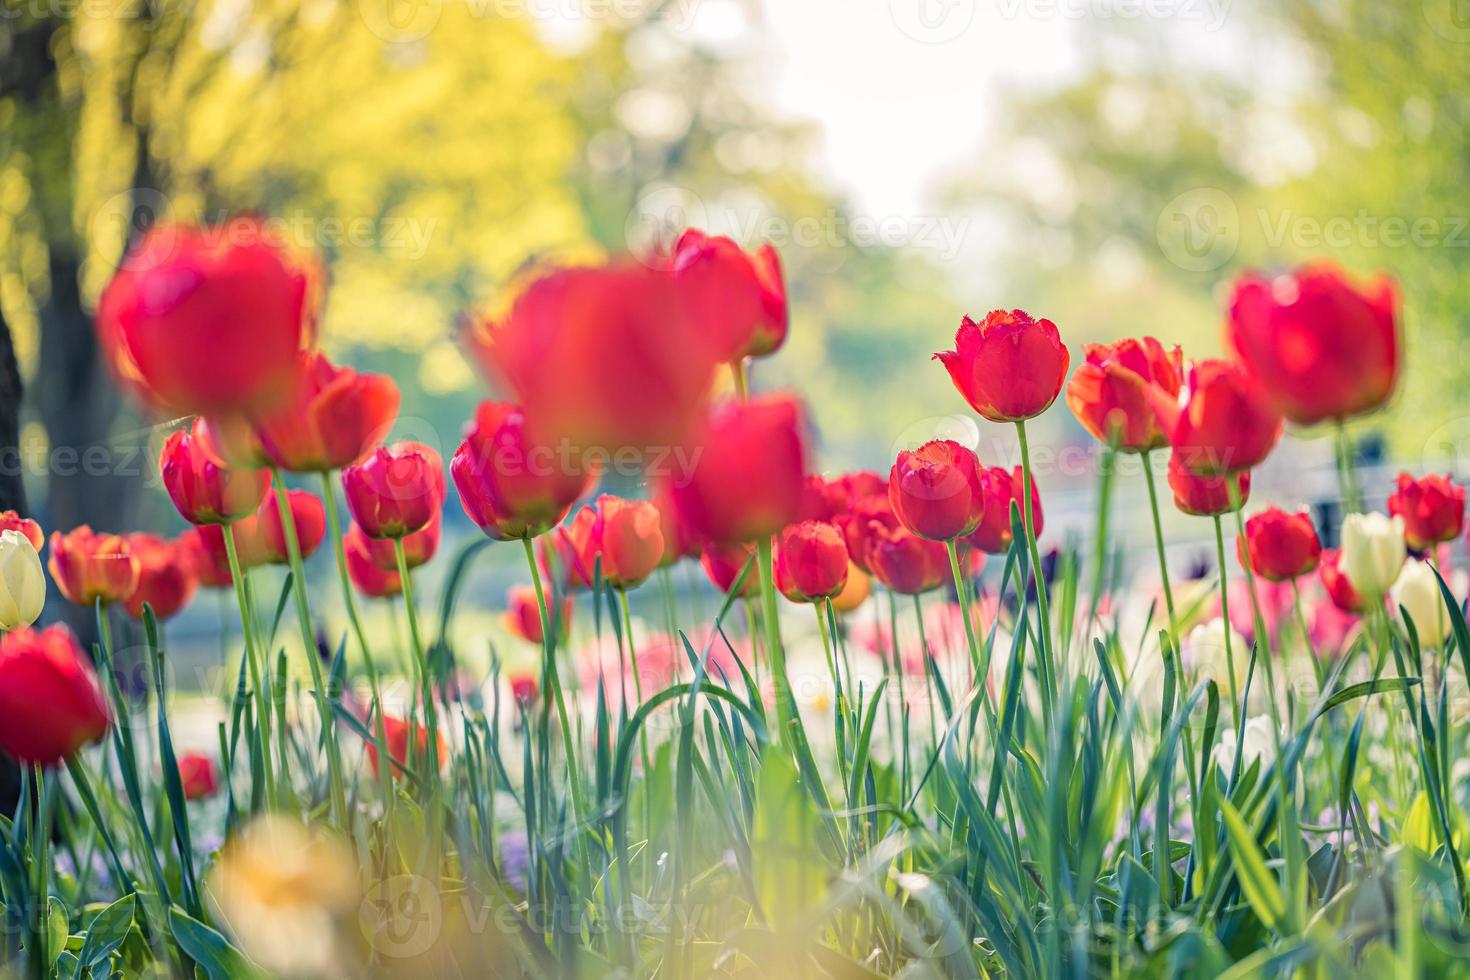 skön röd tulpaner blomning i tulpan fält i trädgård med suddigt solnedgång natur landskap bakgrund. mjuk solljus romantisk, kärlek blomning blommig tapet högtider kort. idyllisk natur närbild foto